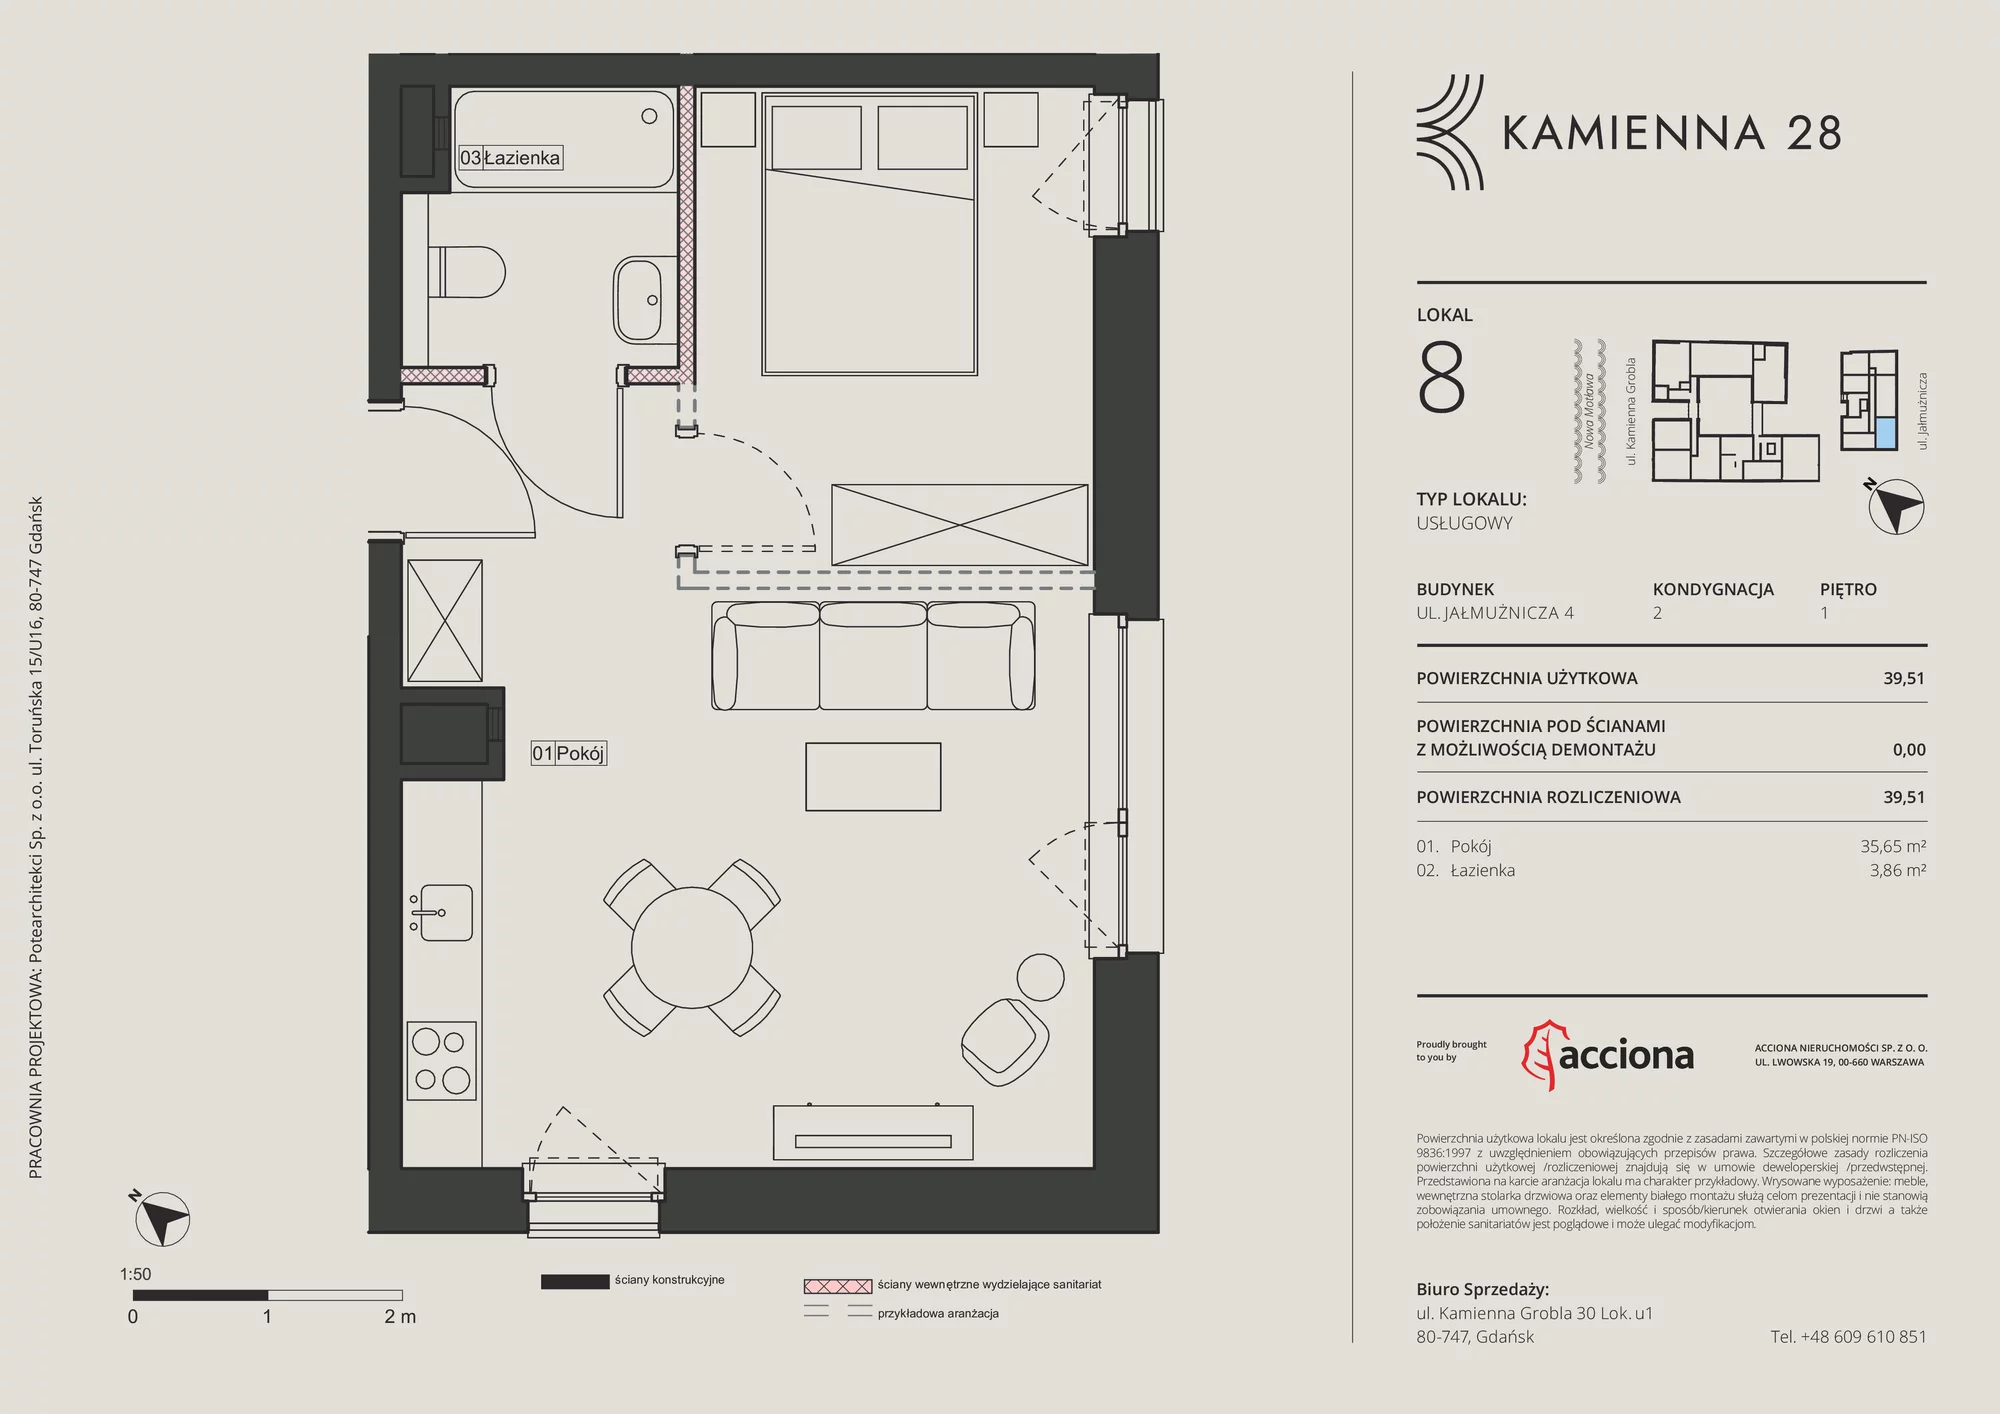 Apartament inwestycyjny 39,51 m², piętro 1, oferta nr 4.8, Kamienna 28 - apartamenty inwestycyjne, Gdańsk, Śródmieście, Dolne Miasto, ul. Jałmużnicza 4